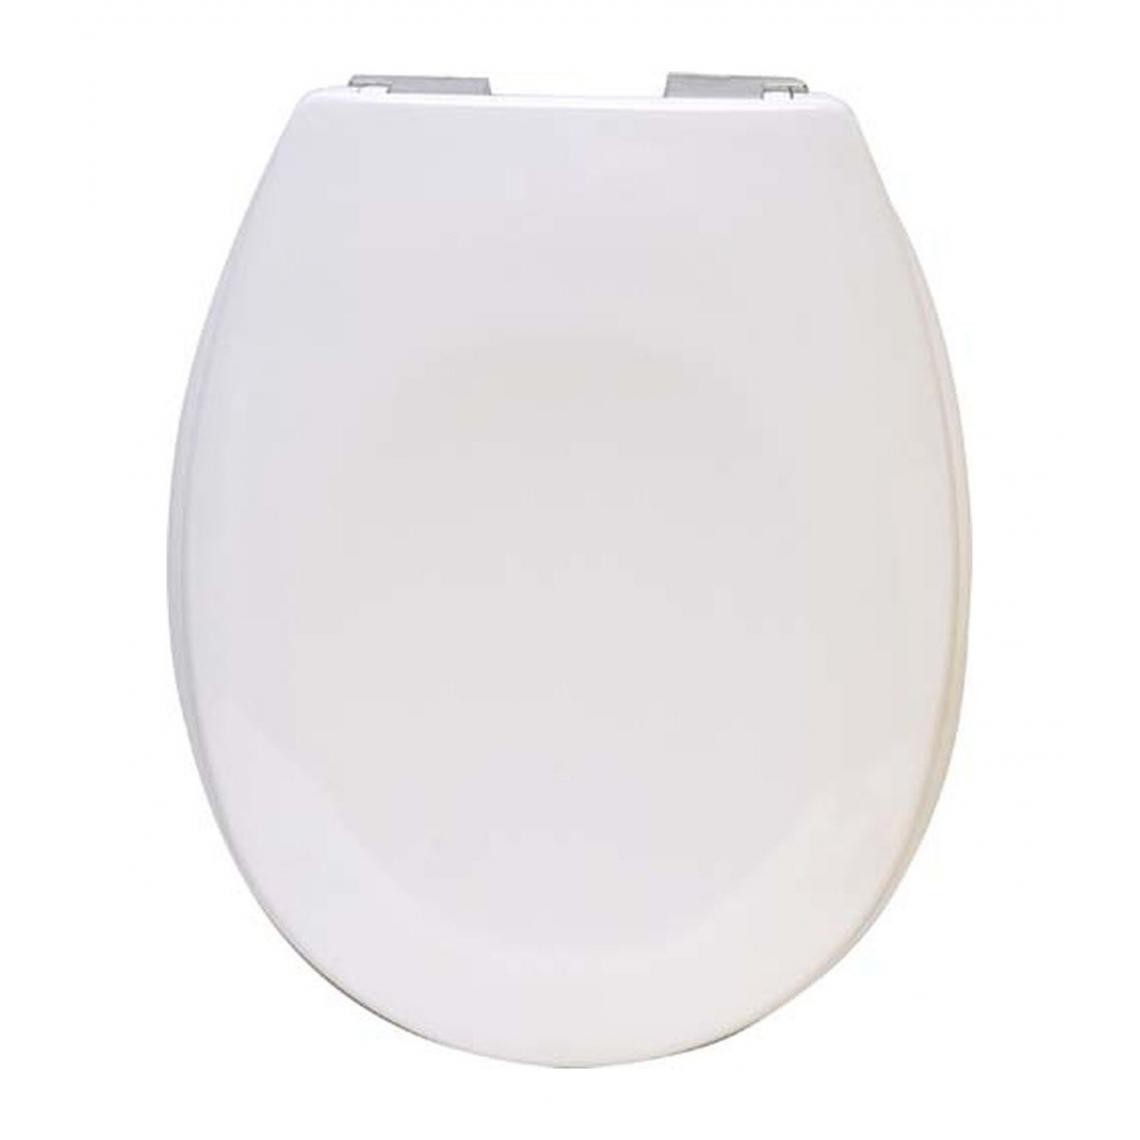 Tendance - TENDANCE - Abattant WC en Thermodur Blanc avec frein de chute - Abattant WC